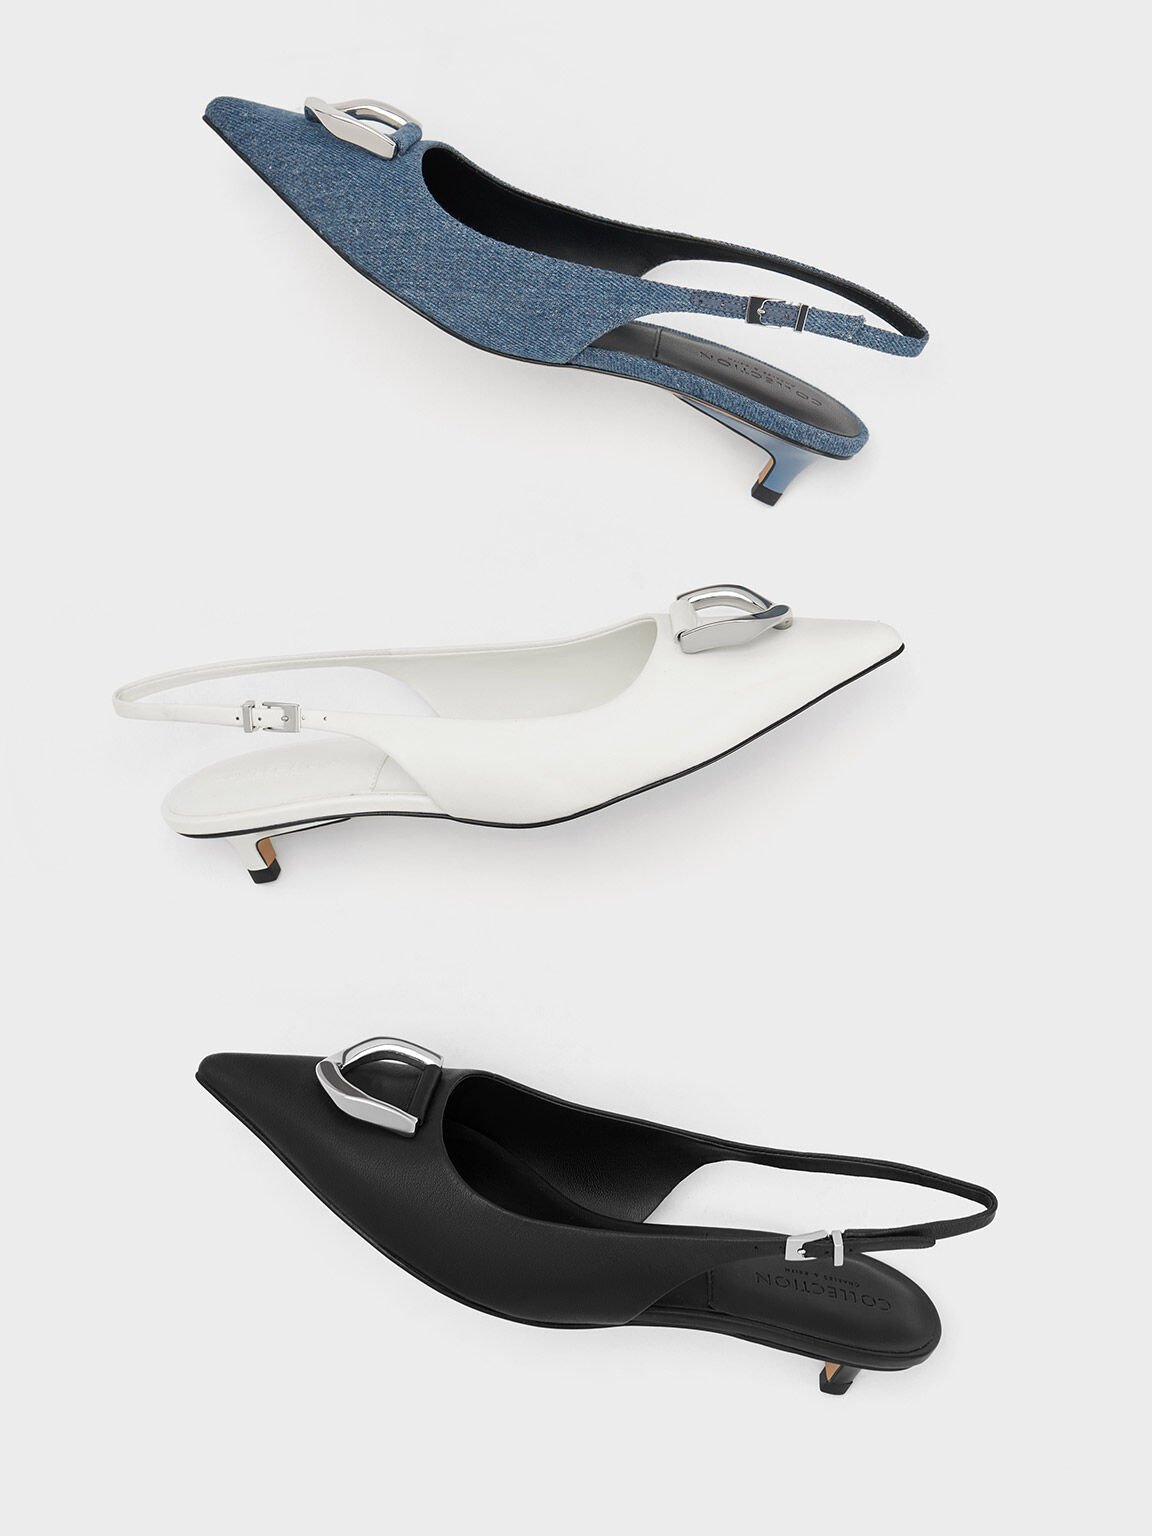 Zapatos de tacón Gabine destalonados en cuero blanco y negro y de mezlilla azul - CHARLES & KEITH